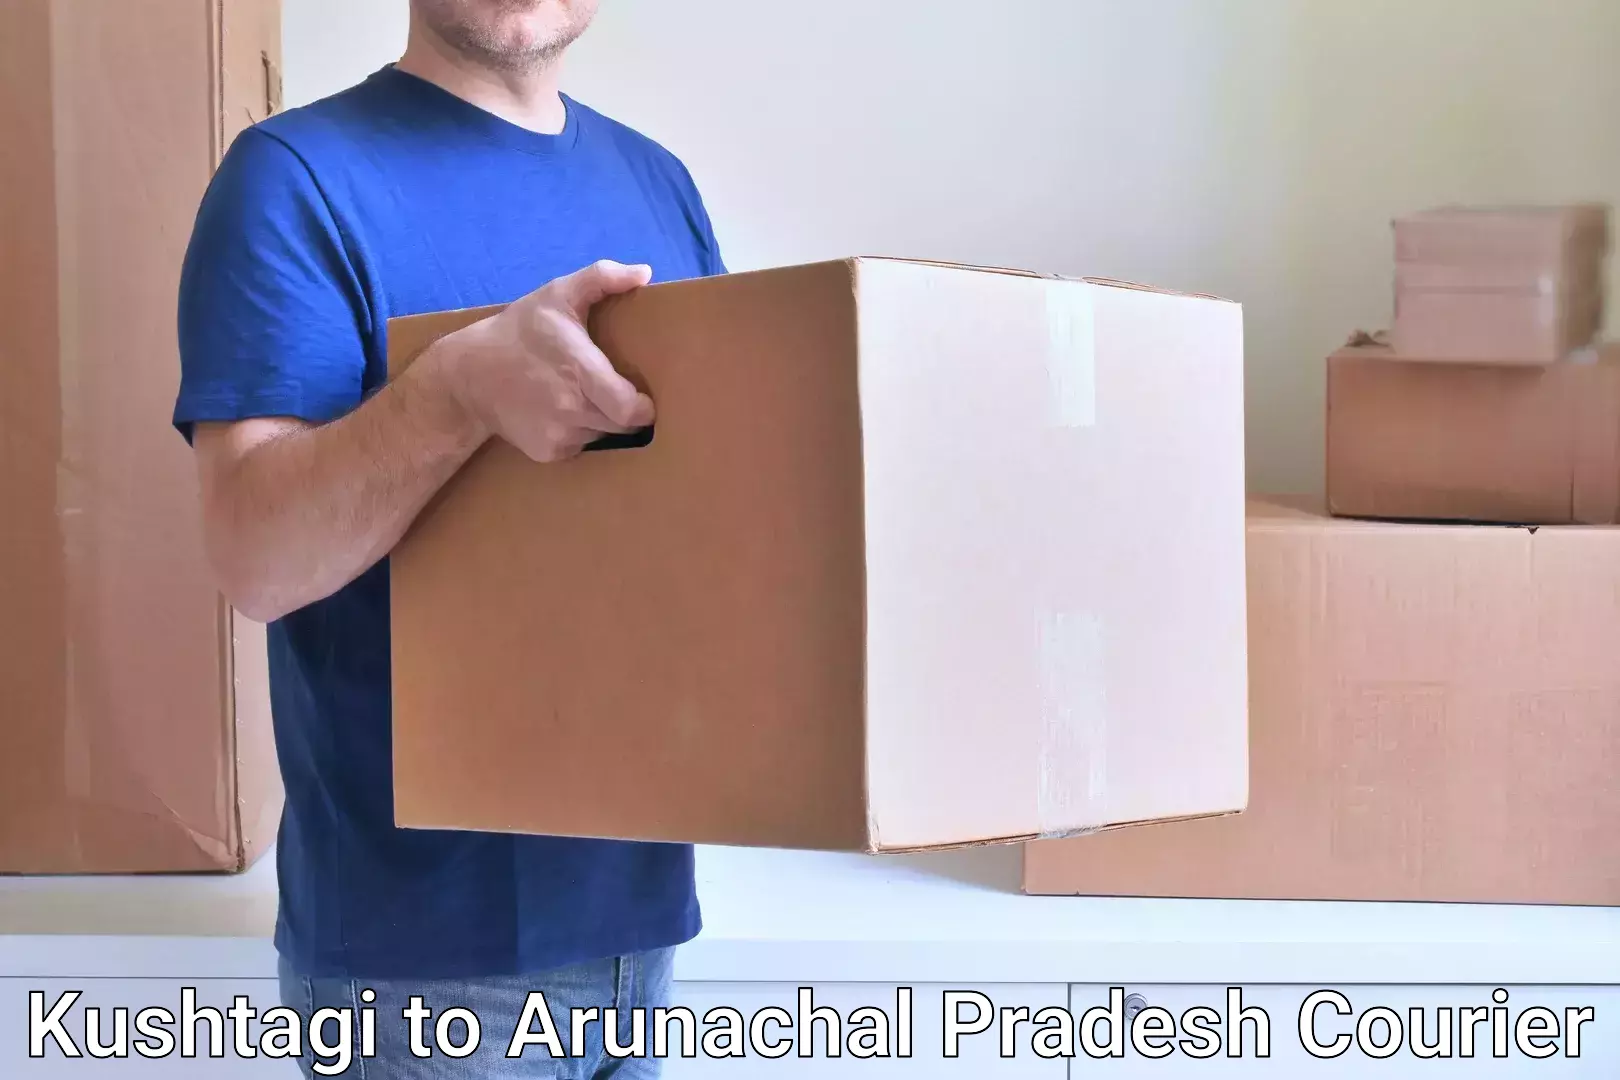 Custom courier strategies in Kushtagi to Arunachal Pradesh